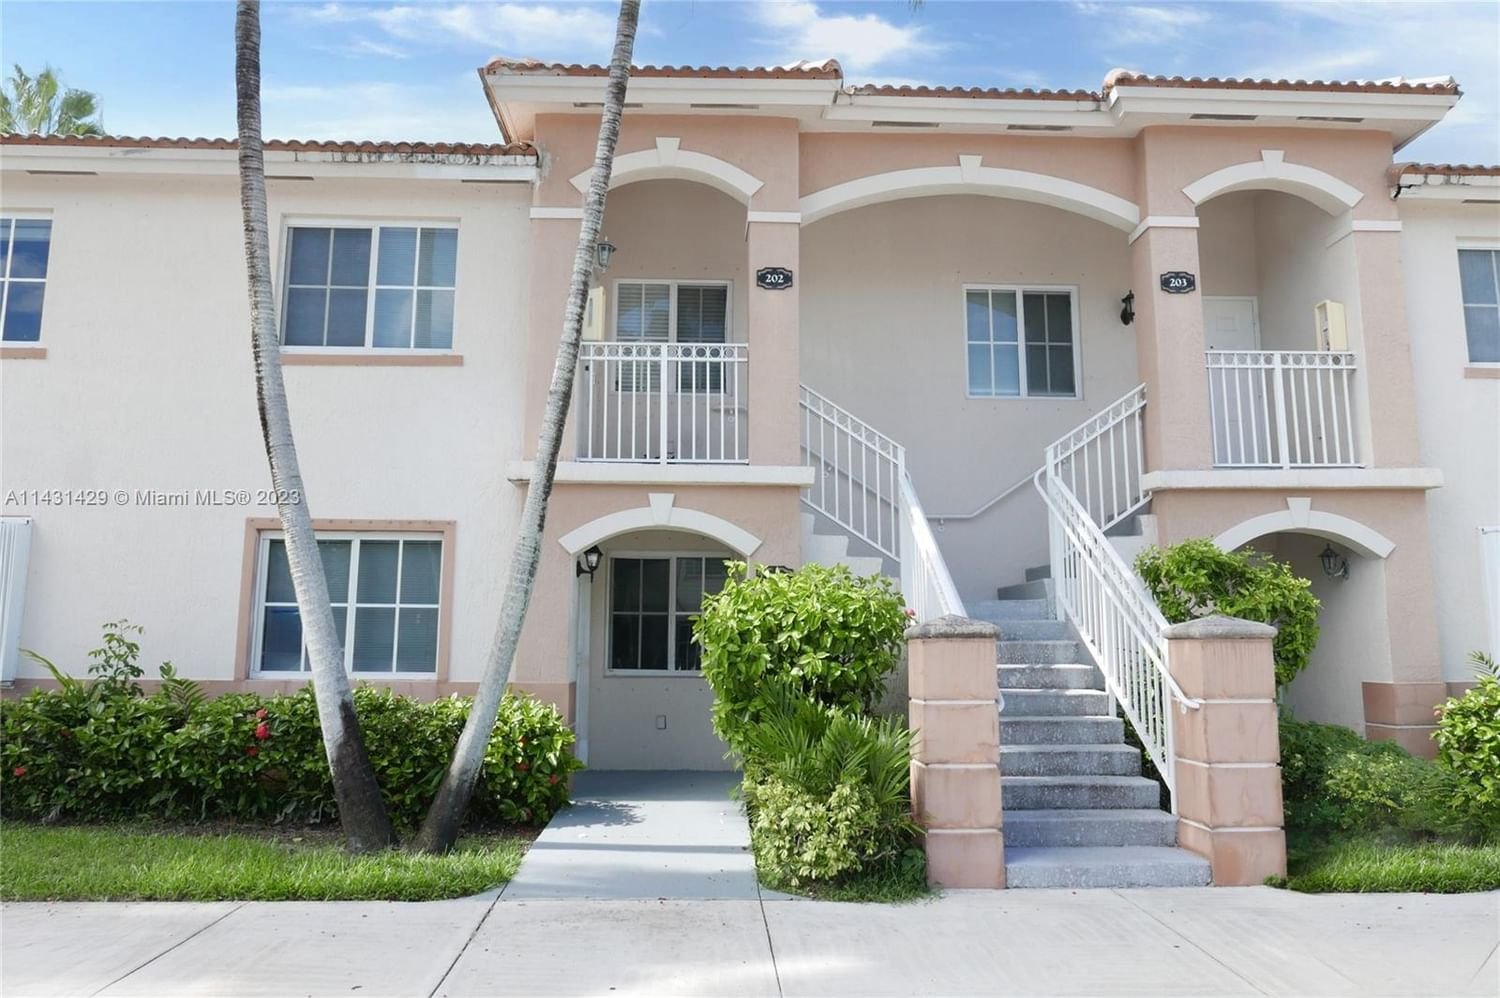 Real estate property located at 1271 28th Ct #102, Miami-Dade County, VENETIA GARDENS CONDO, Homestead, FL